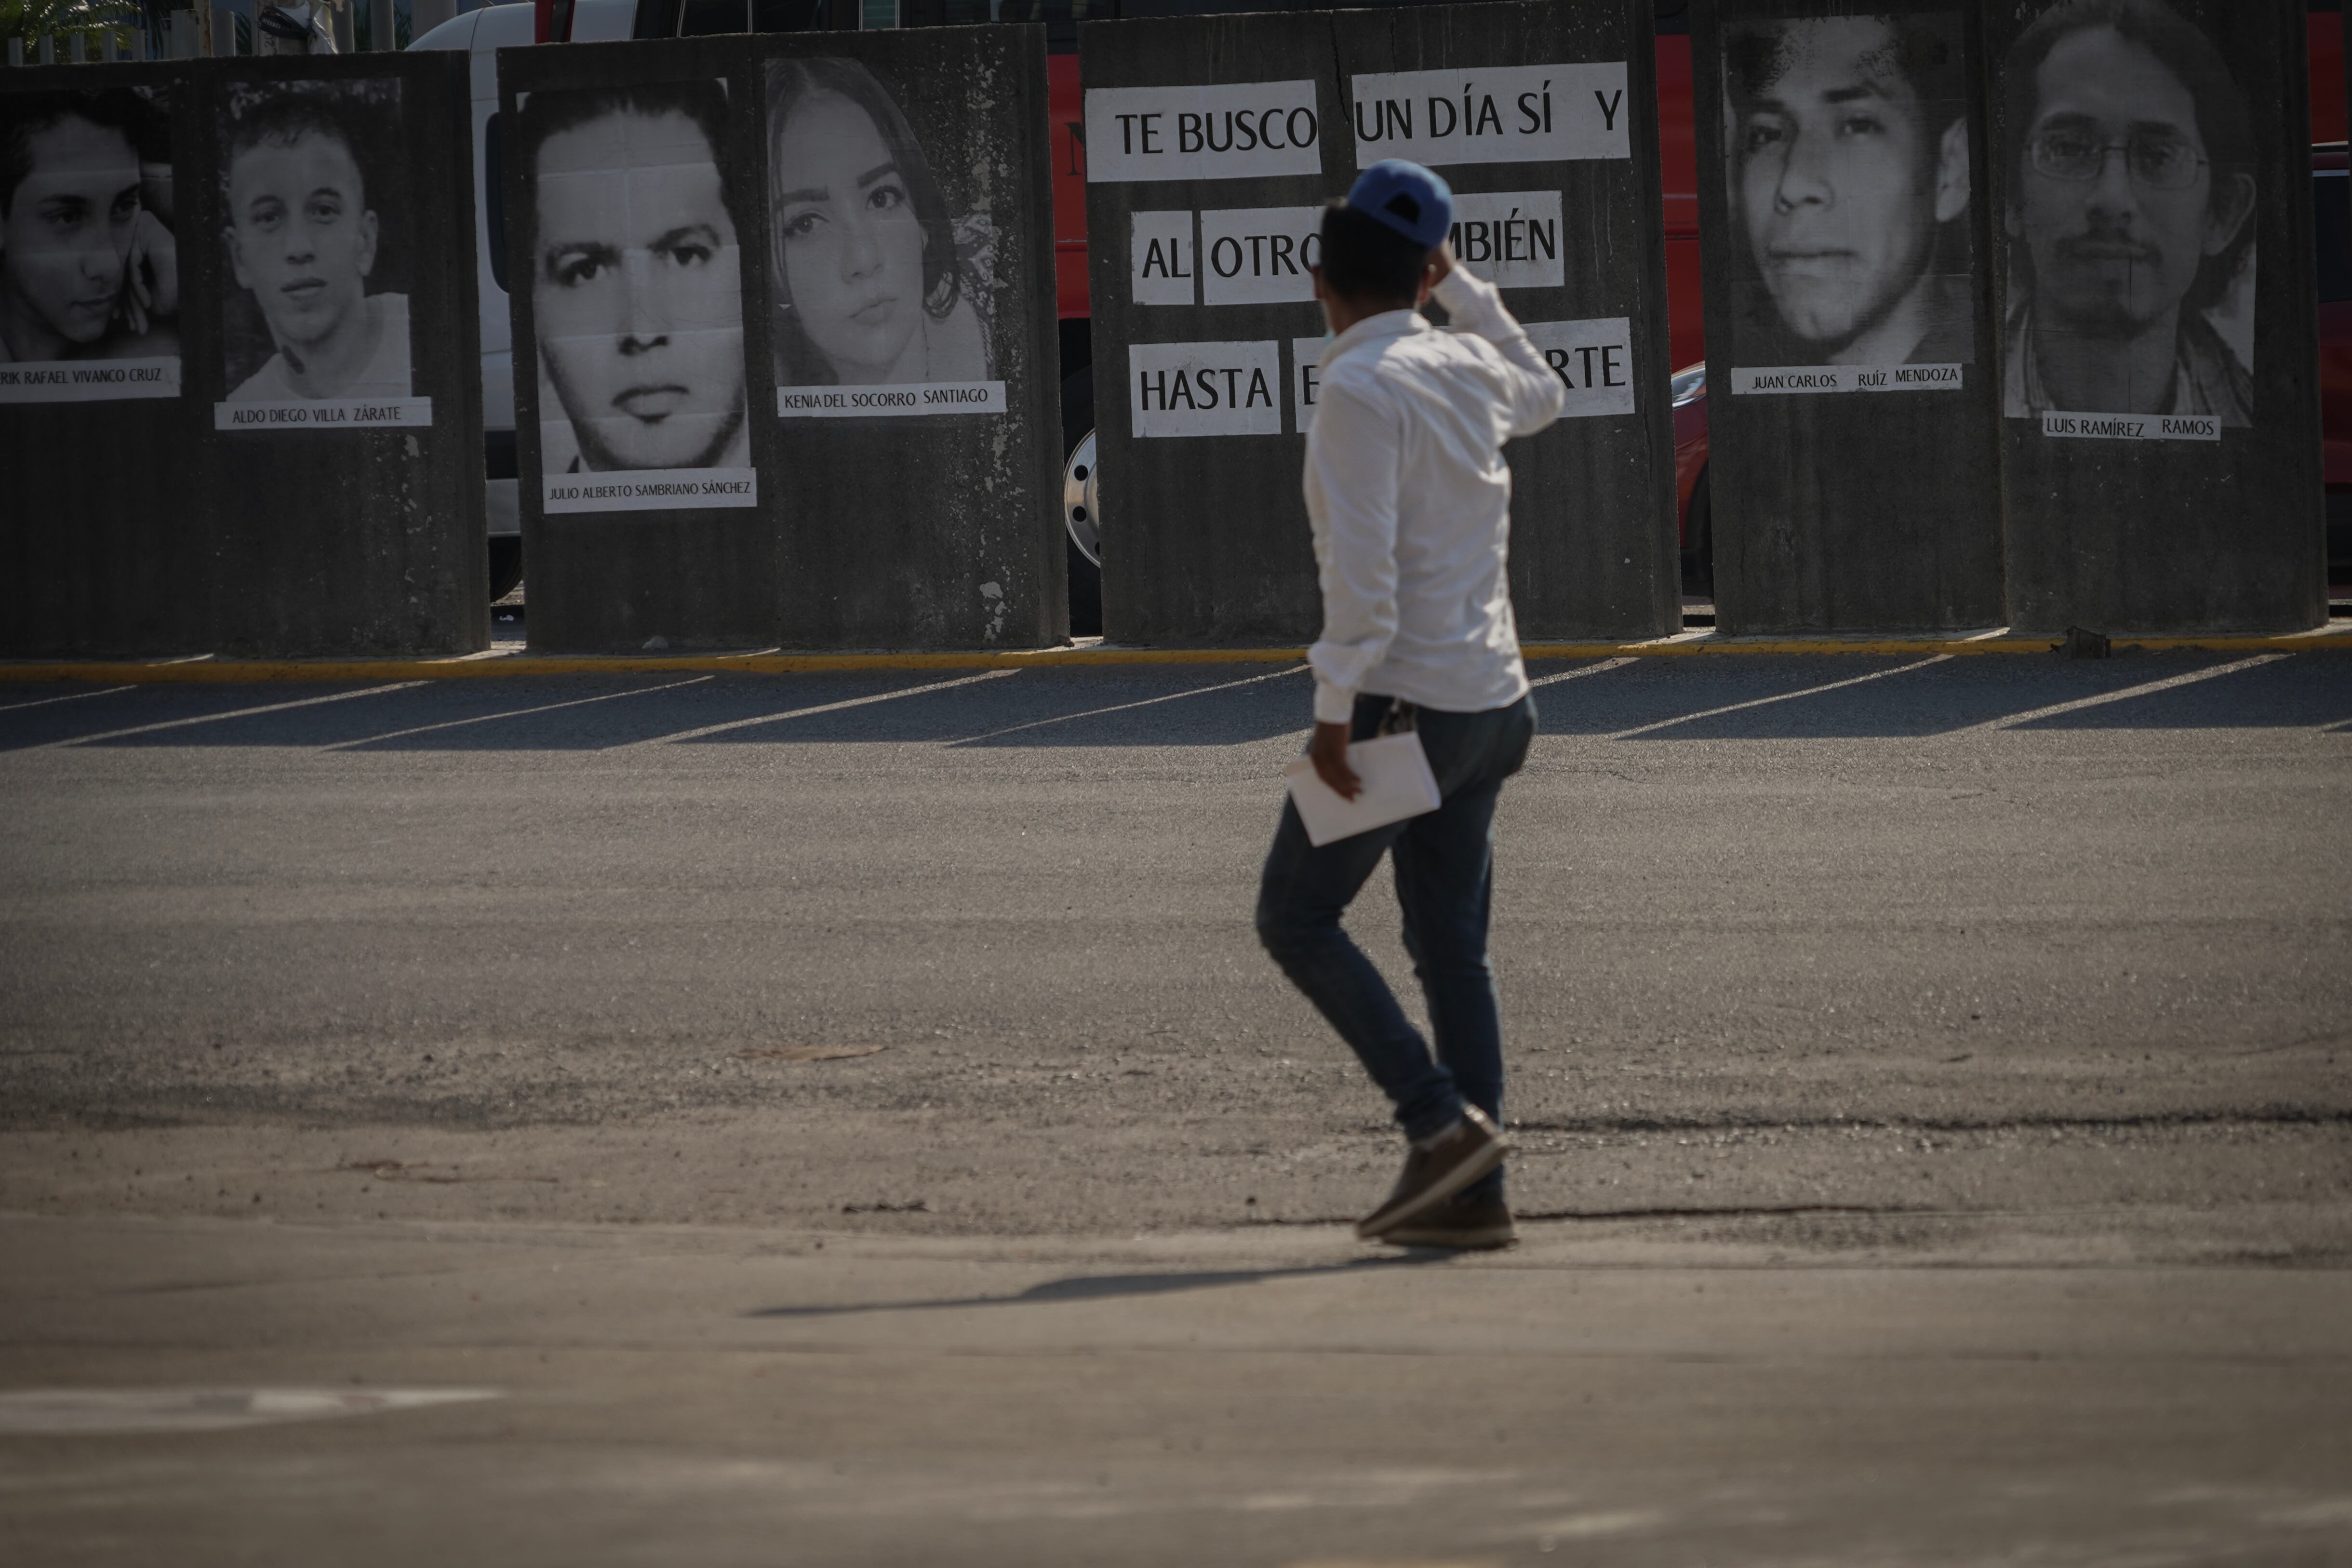 Familiares del Colectivo Justicia y Dignidad colocaron un mural con fotografías de desaparecidos en Veracruz.